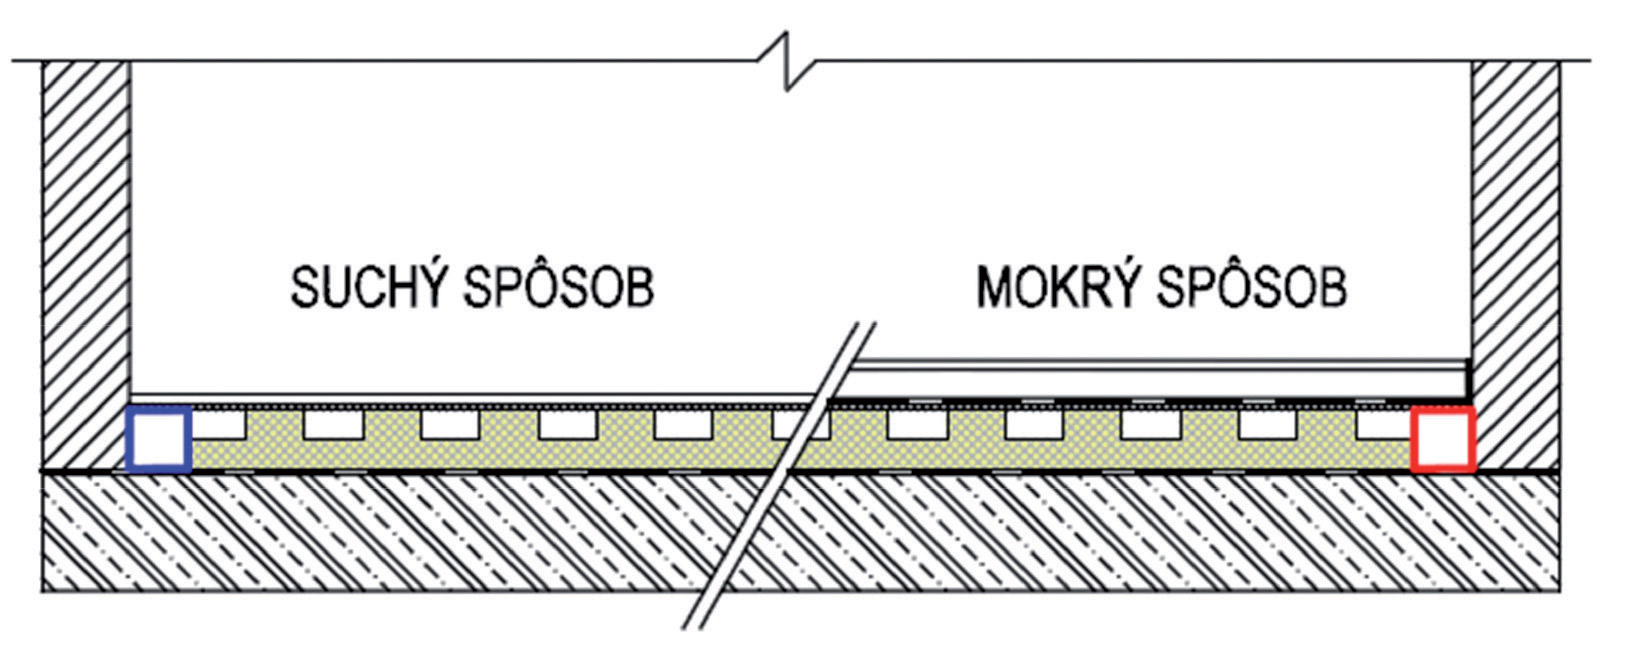 Obr. 13 Detail suchého a mokrého způsobu vyhotovení podlahového vytápění pomocí ITAP panelů s integrovaným vzduchovým kanálem (panel je tvořen izolační deskou s kanály, je překrytý a slepený velkoplošnou deskou, např. sádrokartonem).